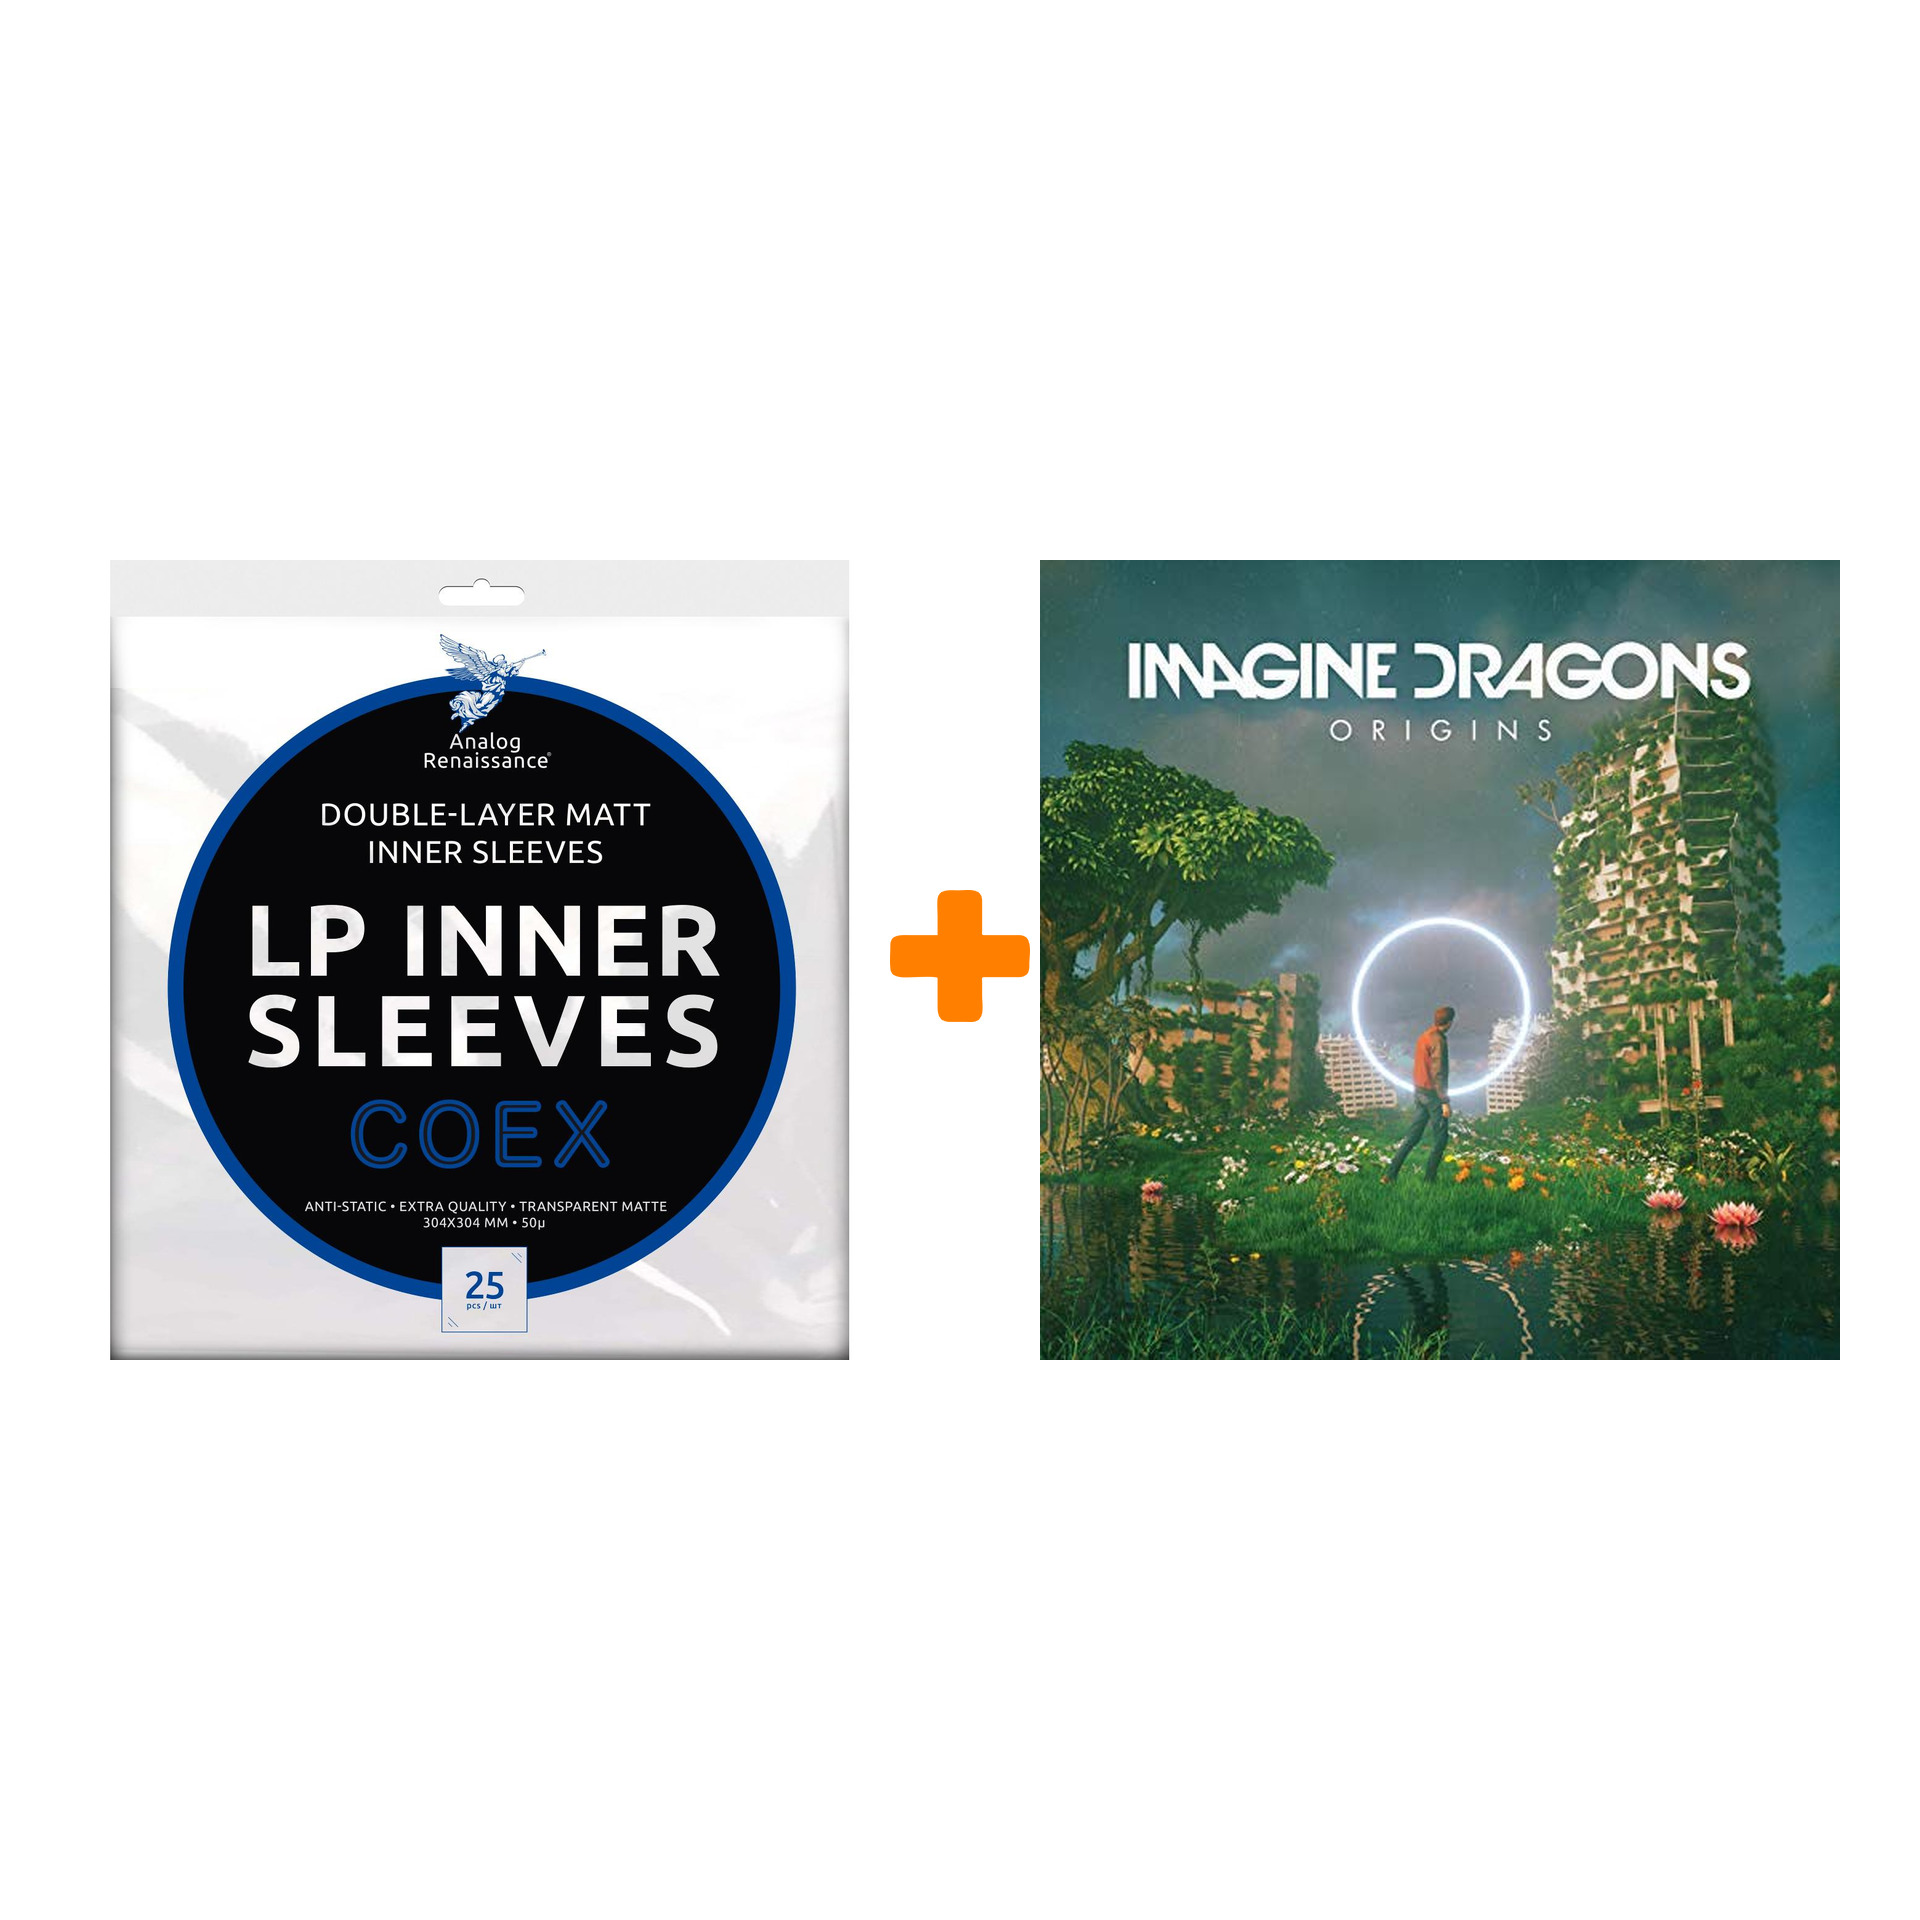 IMAGINE DRAGONS Origins 2LP + Конверты внутренние COEX для грампластинок 12 25шт Набор